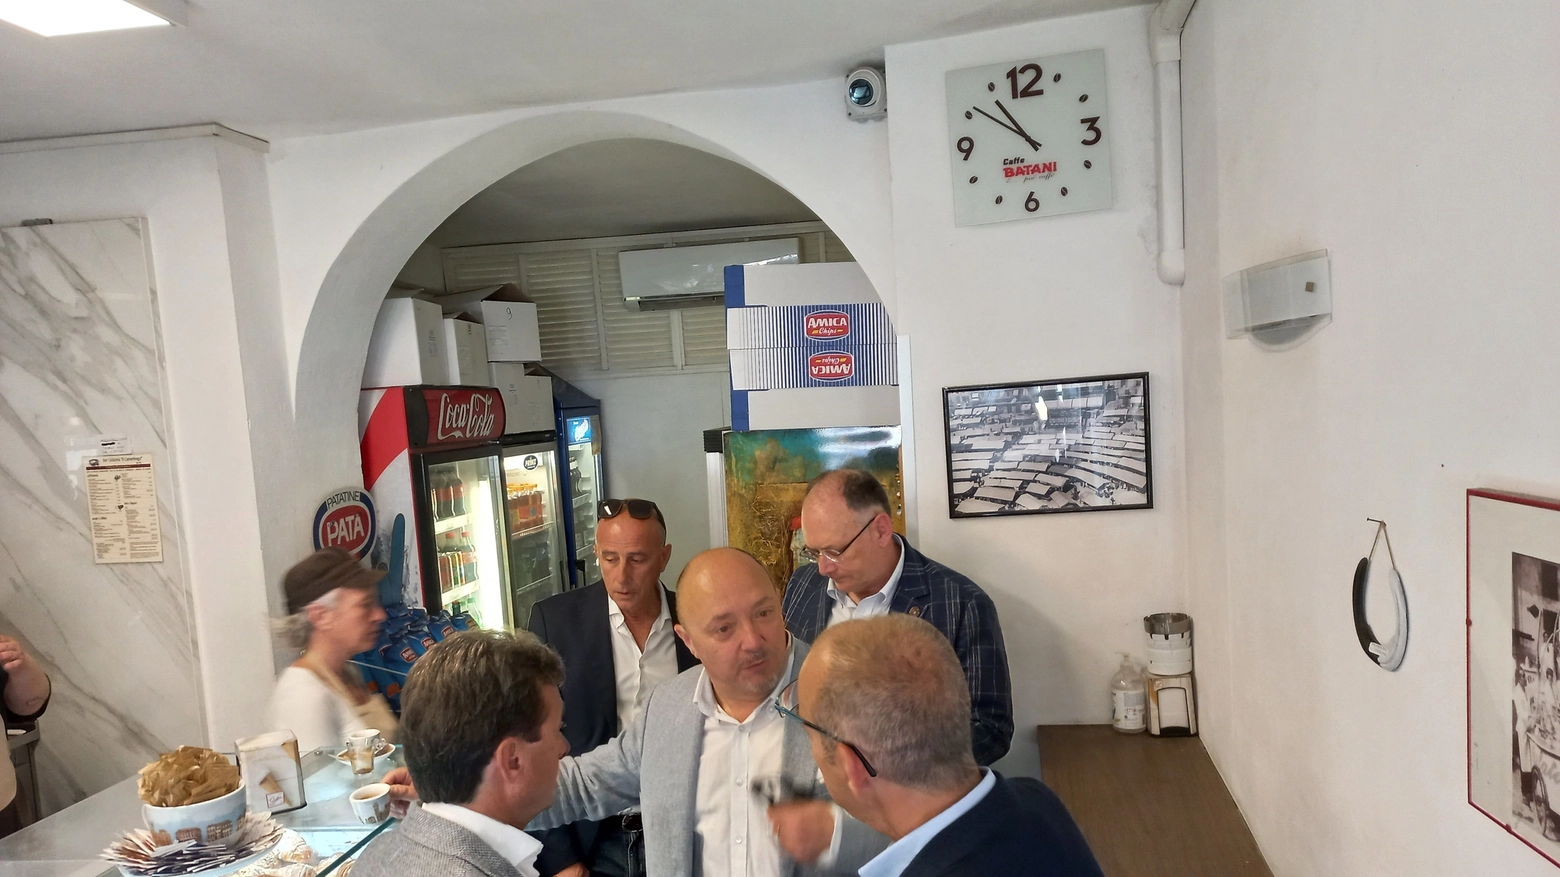 Alcuni capitani prendono un caffè, offerto da Gianluca Testa, prima dell'inizio della riunione (foto Valdesi)